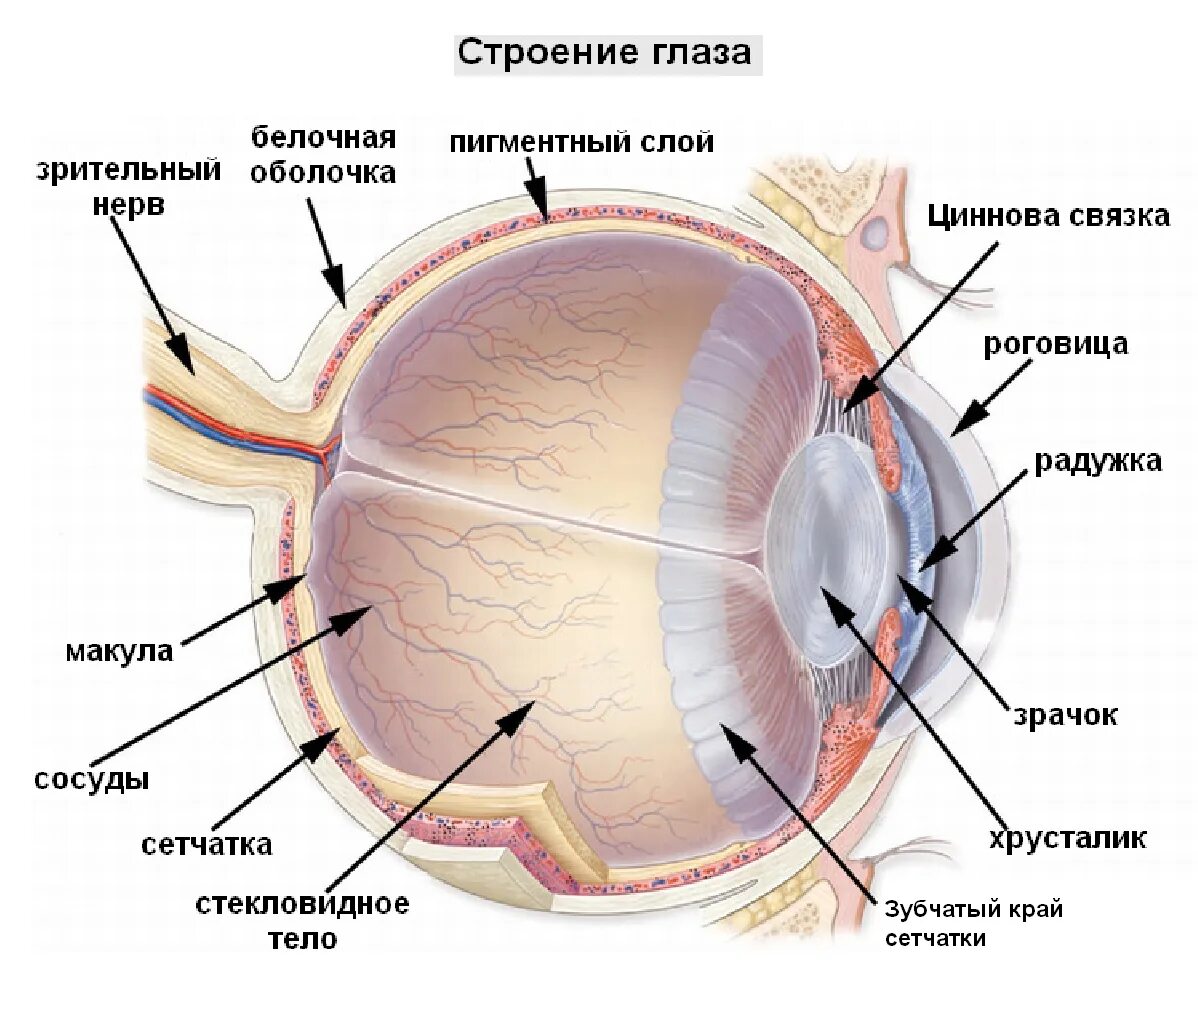 Зрительные нервы глазного яблока. Сетчатка оболочка глаза. Строение глаза послойно. Строение глазного яблока и сетчатки. Структура глазного яблока схема.